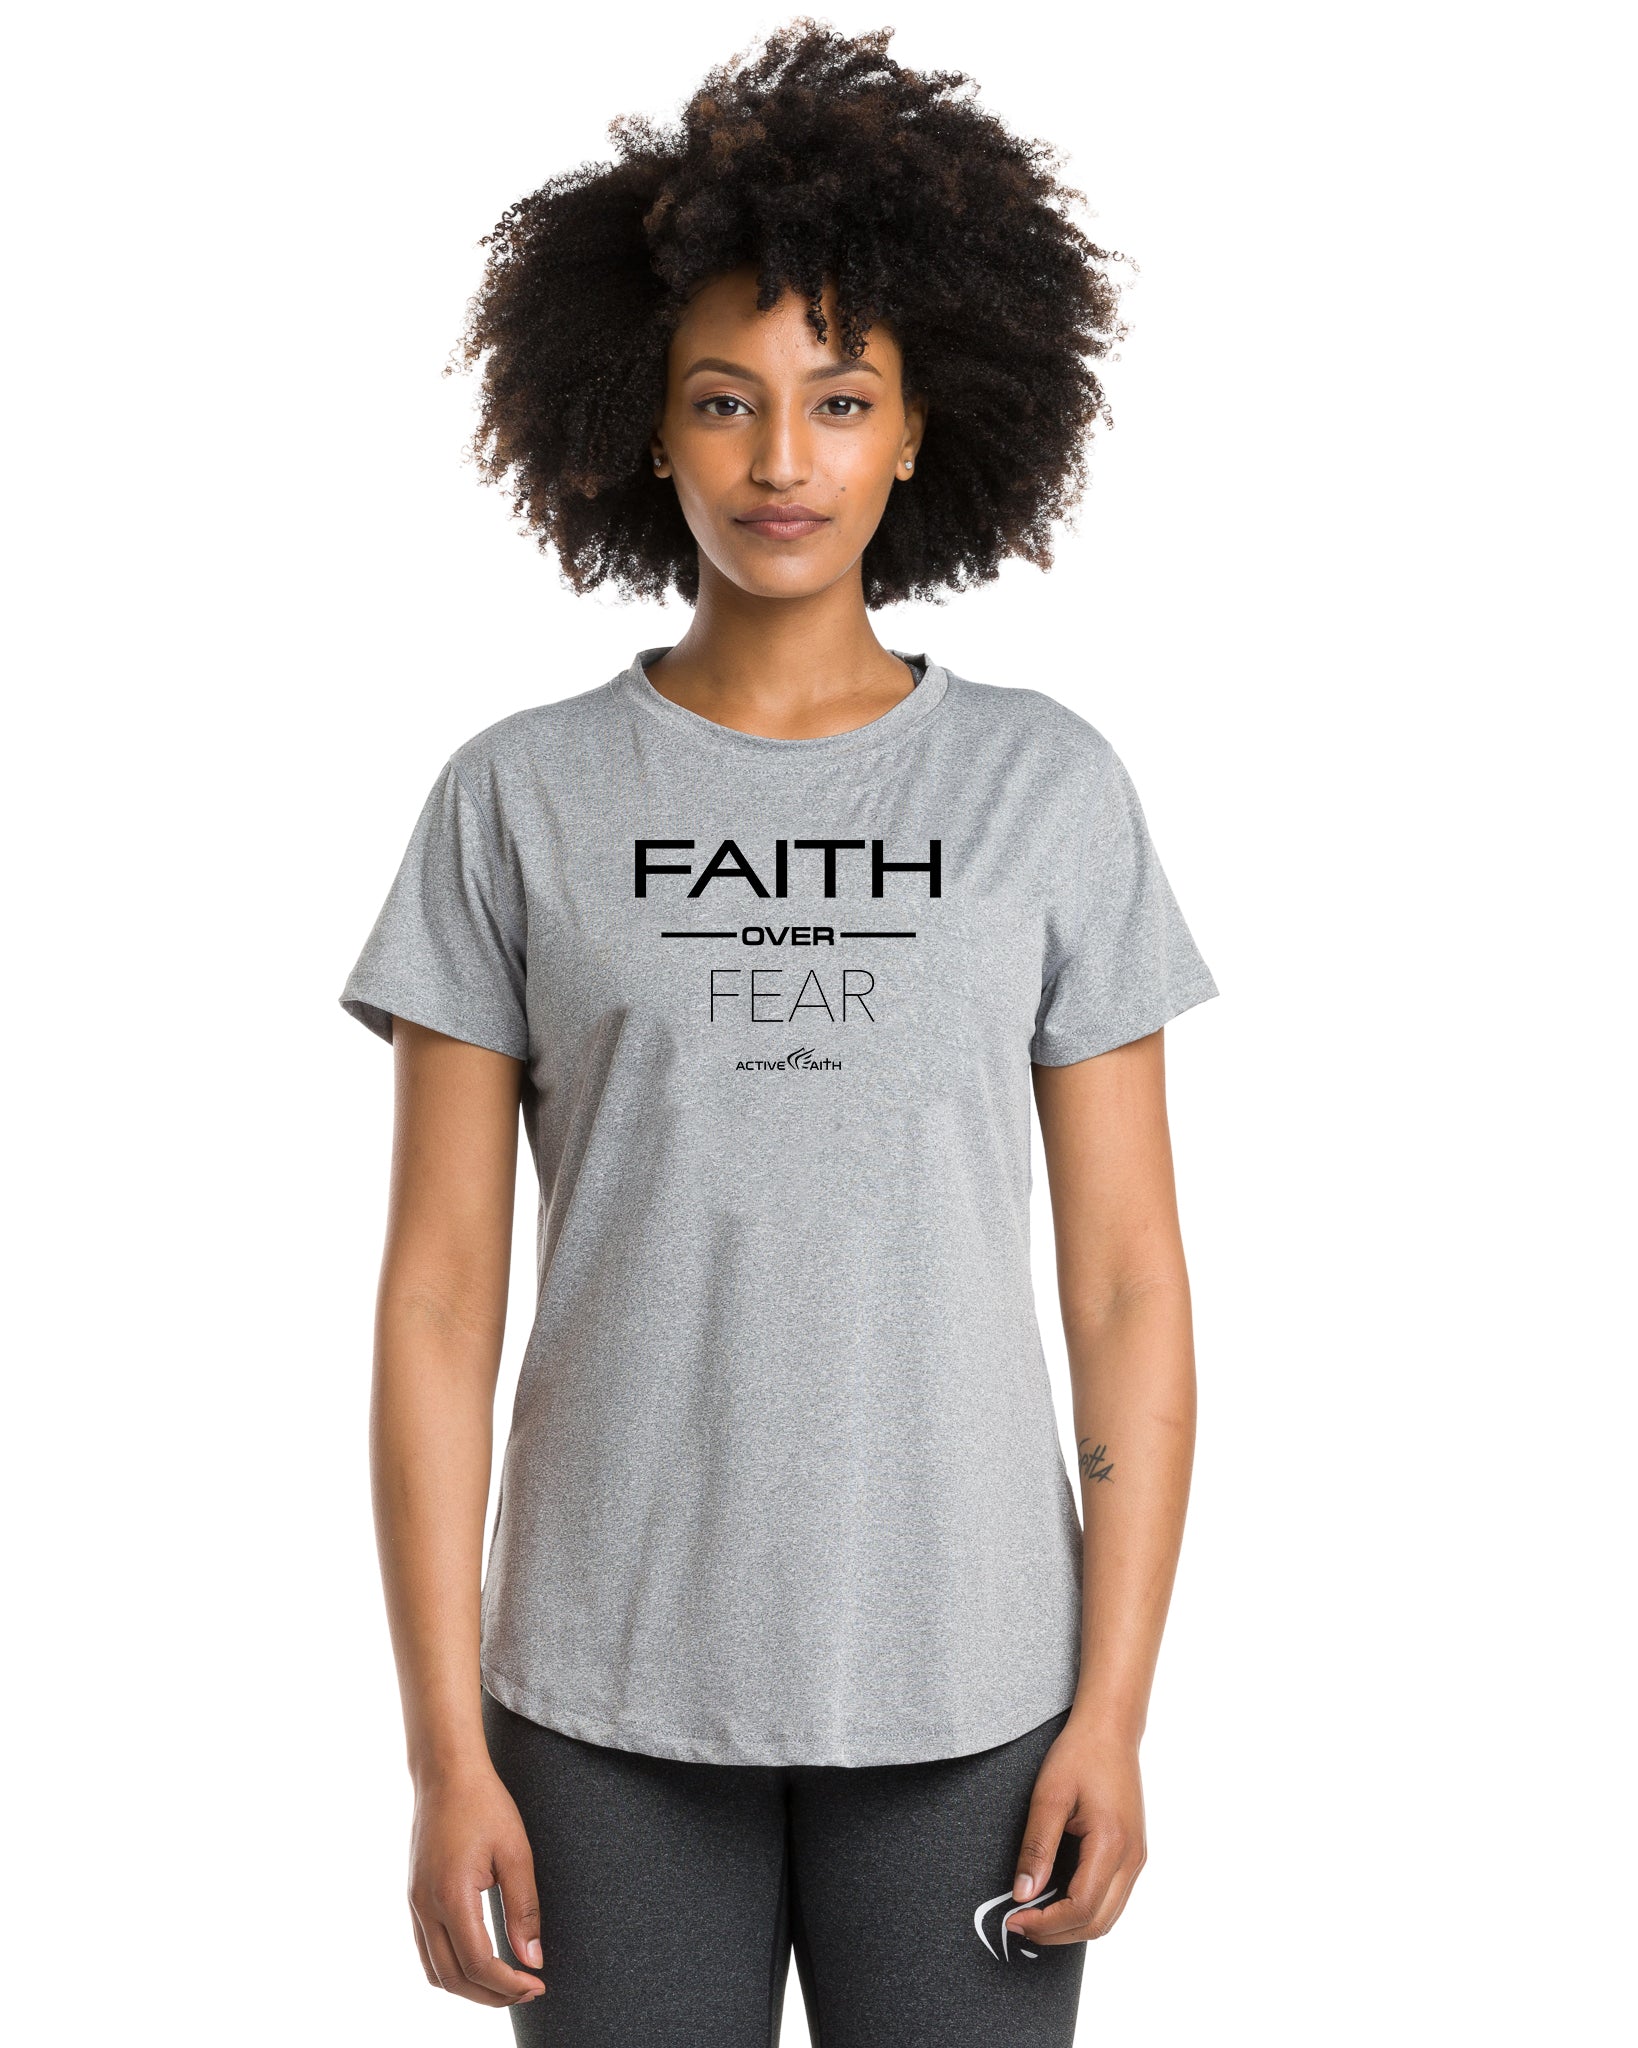 Faith Over Fear Performance Shirt for Women, Grey